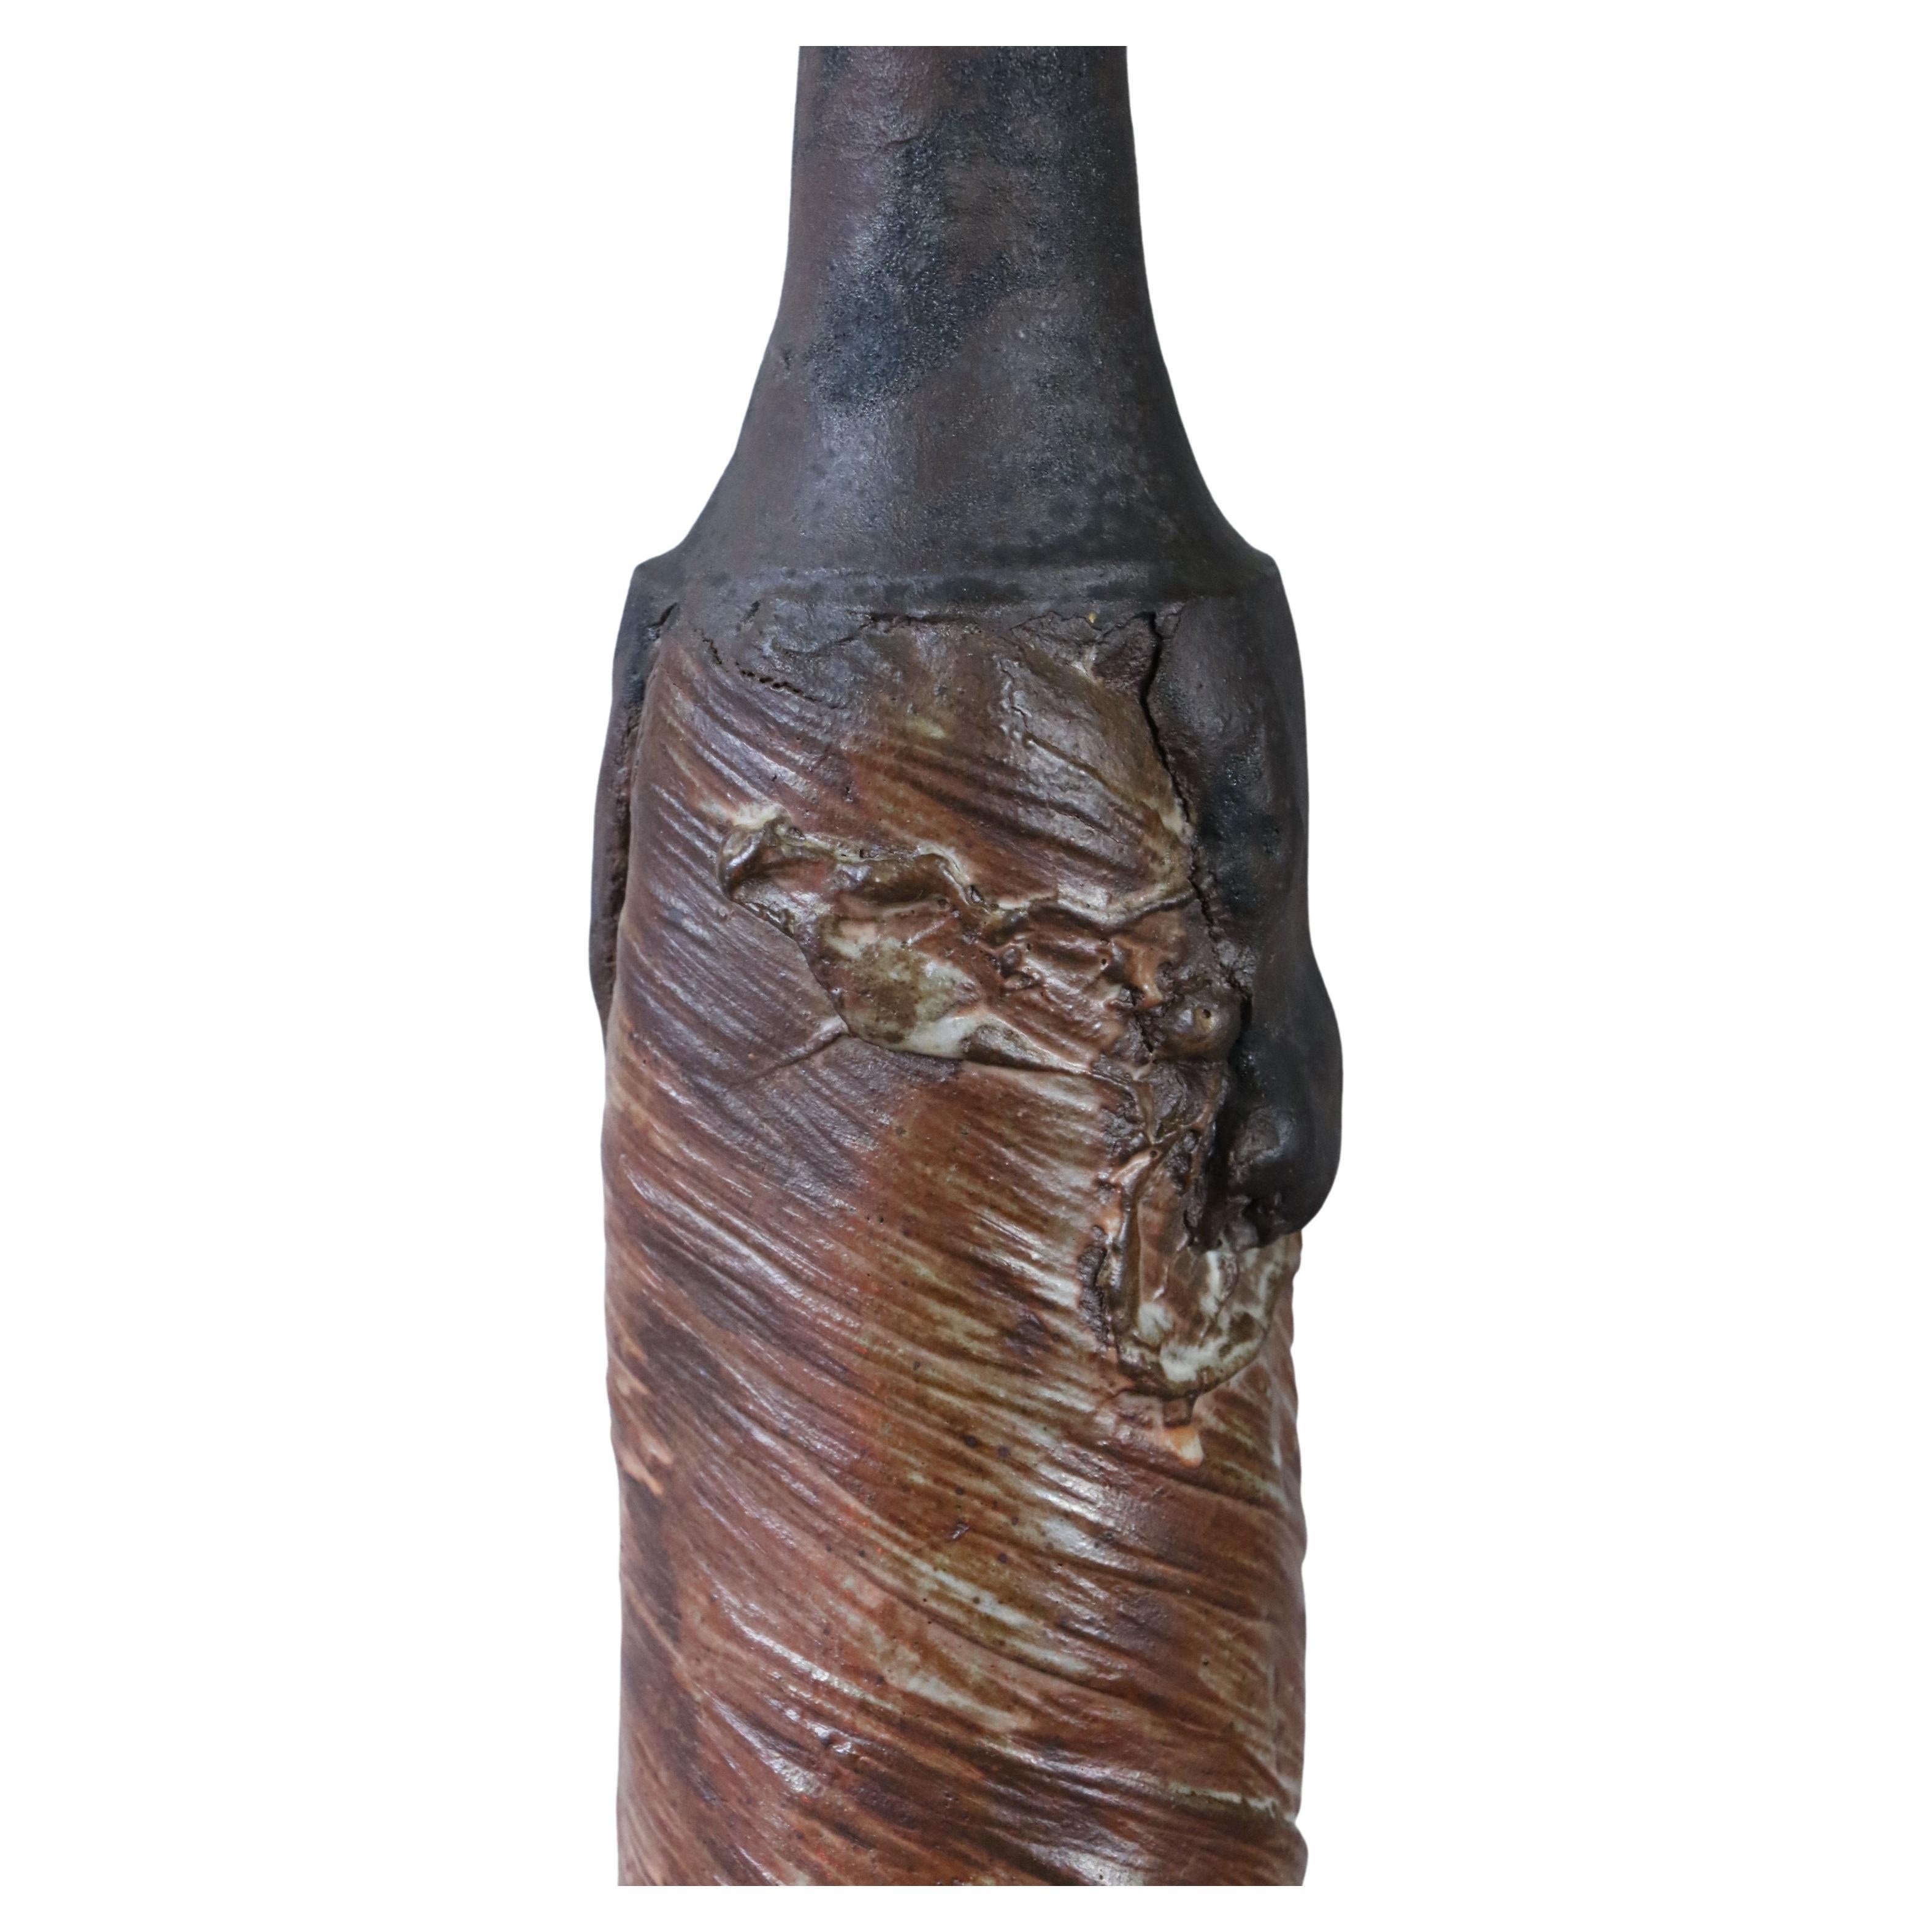 French Large stoneware bottle by Alain Gaudebert, Puisaye - Era Joulia Debril Deblander